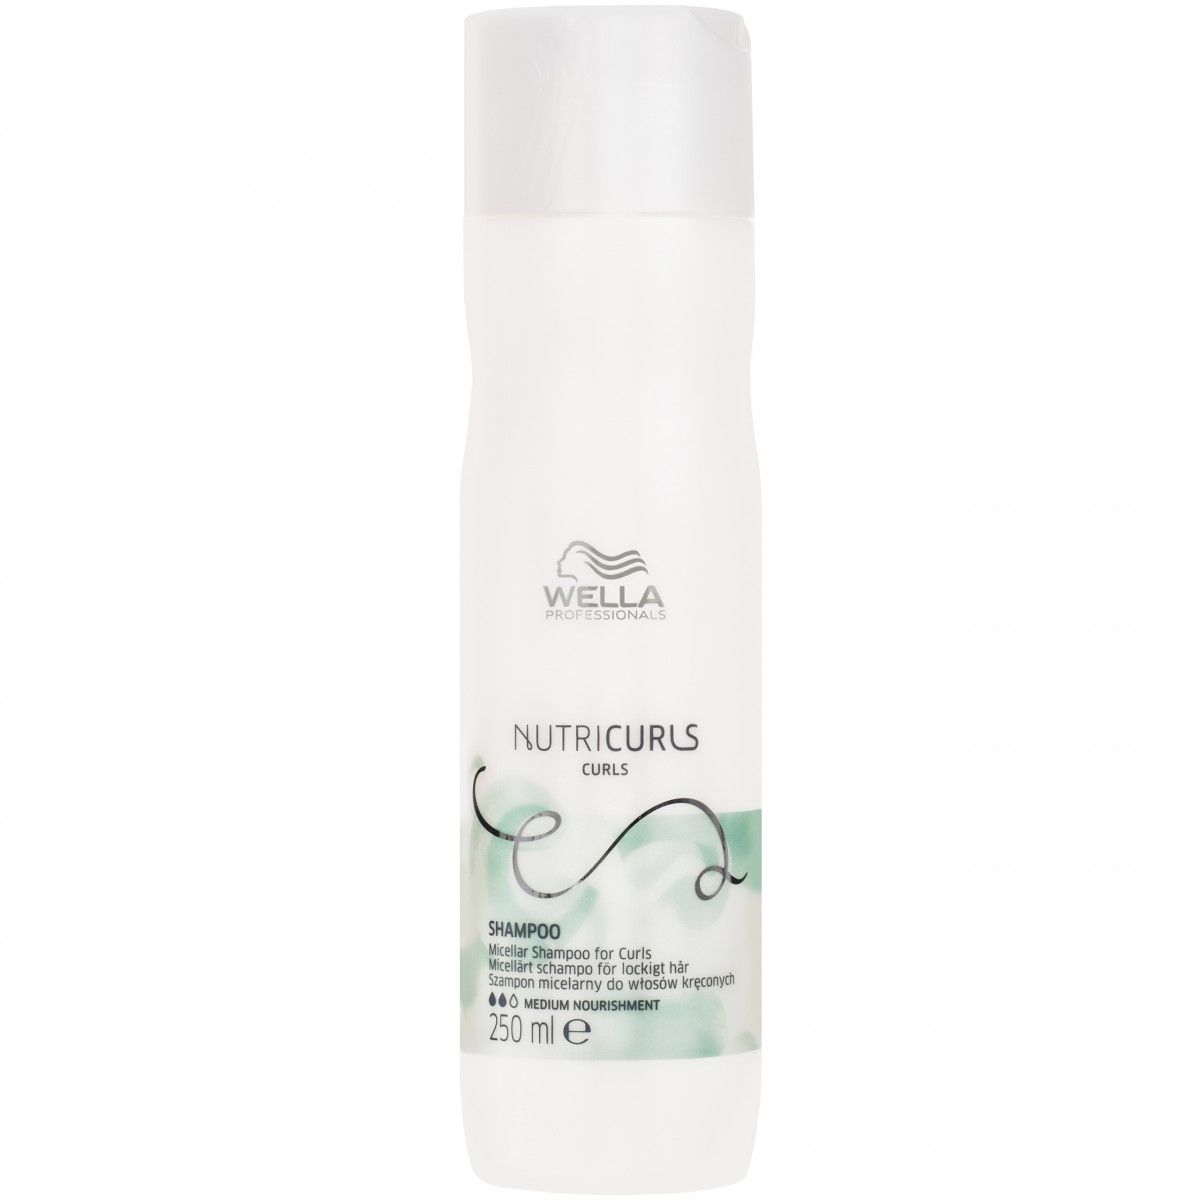 Wella Nutricurls Shampoo delikatny szampon do loków 250ml